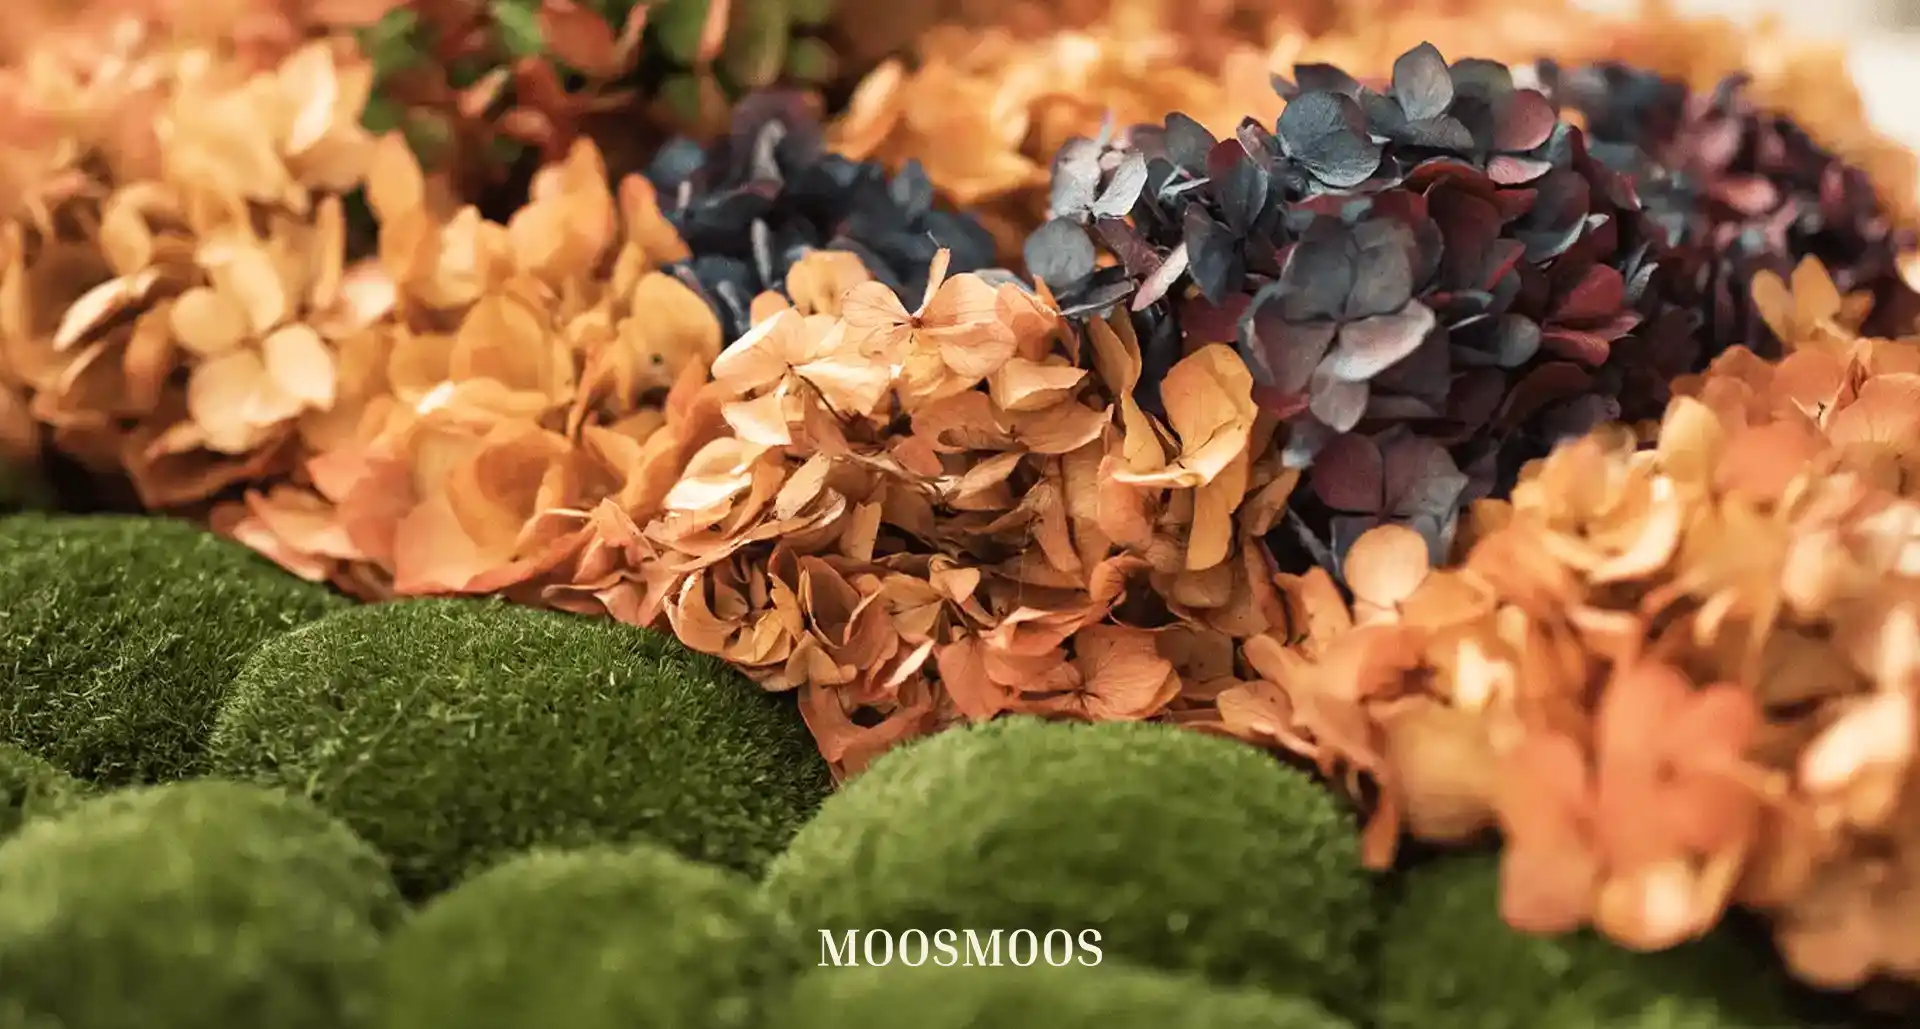 MOOSMOOS Blumenwand / Flowerwall mit echten Blumen, Pflanzen und Moosen Detailansicht